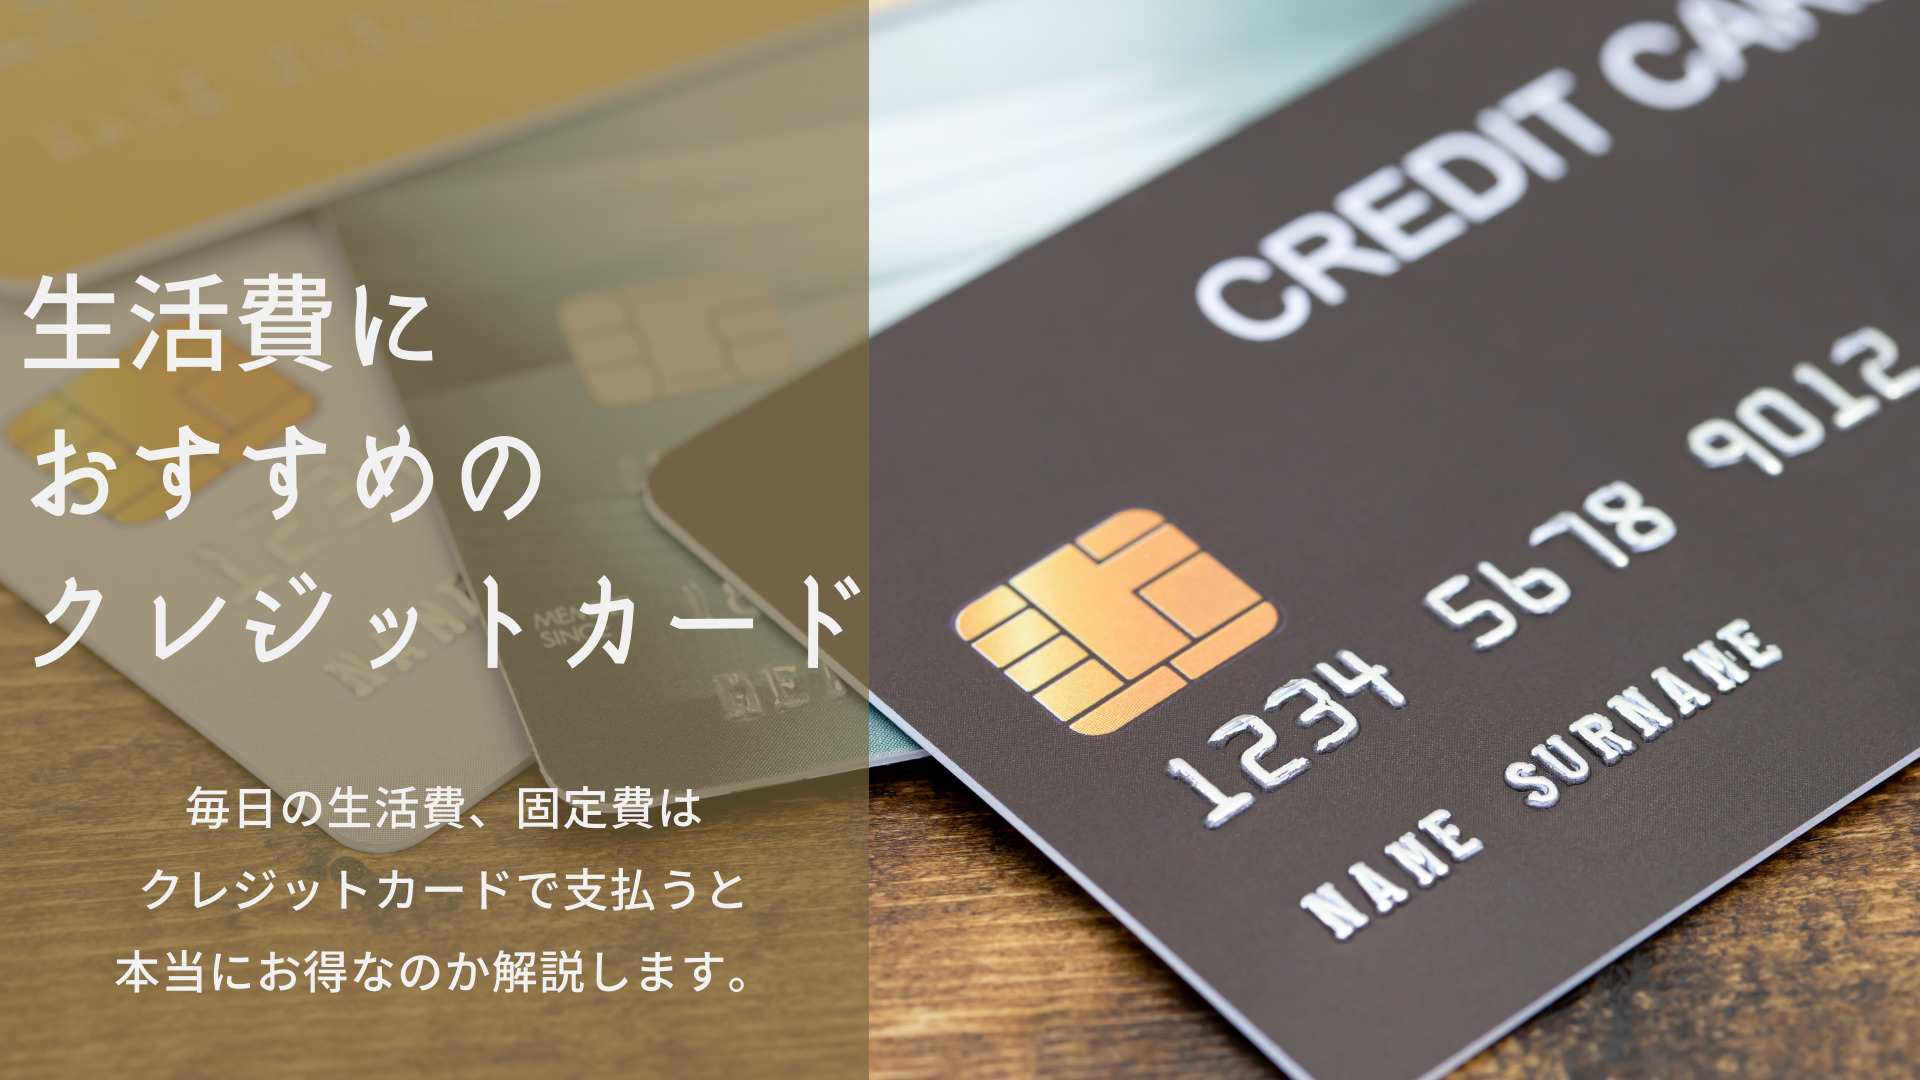 生活費におすすめのクレジットカード４選 本当に現金よりお得 ネットマイルマガジン クレジットカードやおすすめ のアプリなど生活を豊かにする情報をお届け